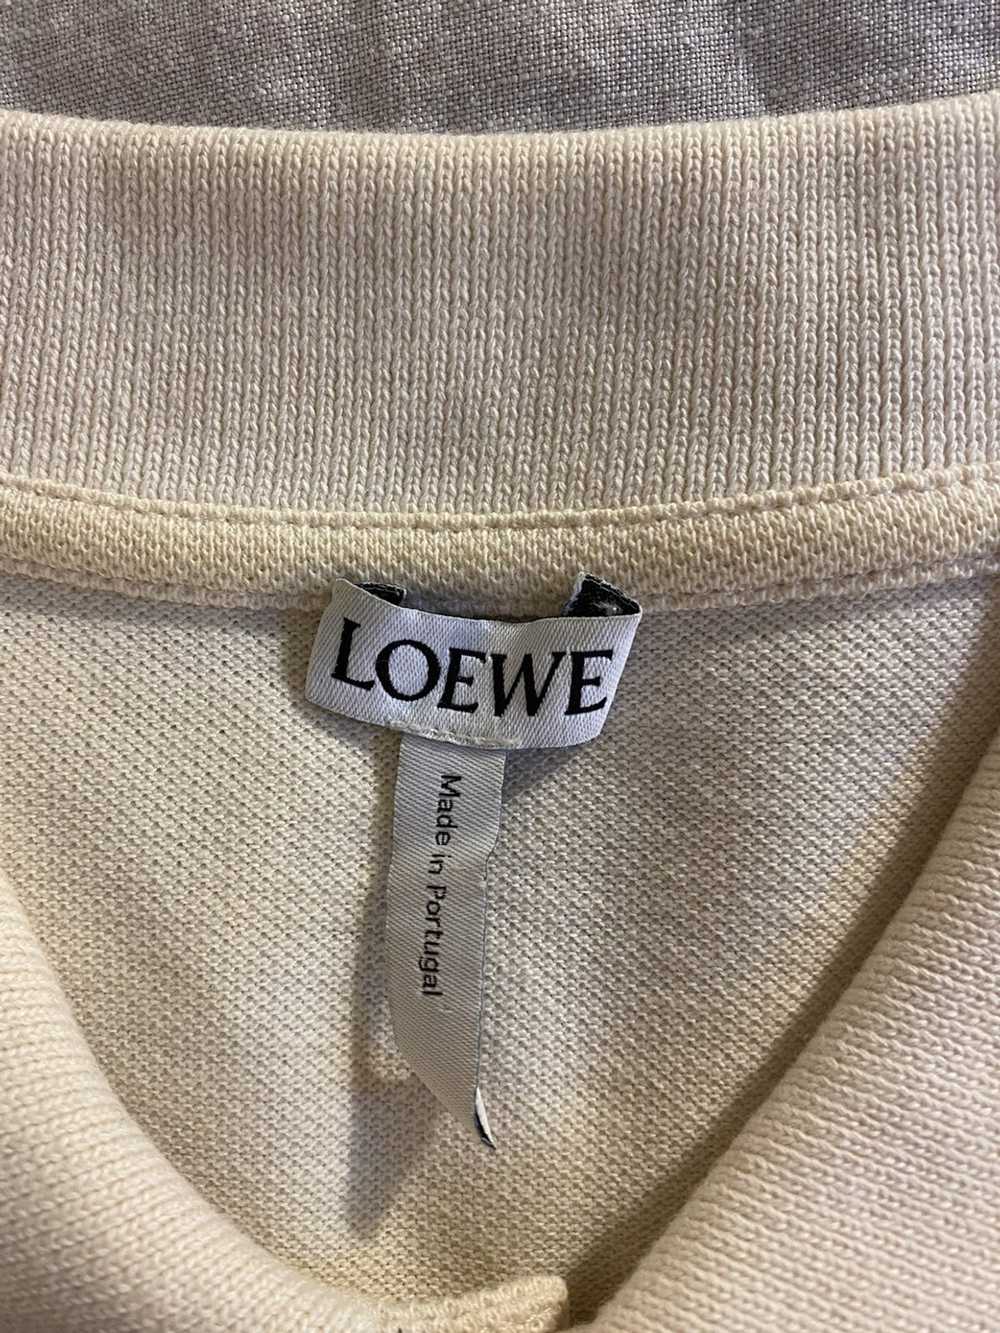 Loewe Loewe Anagram Polo - image 4